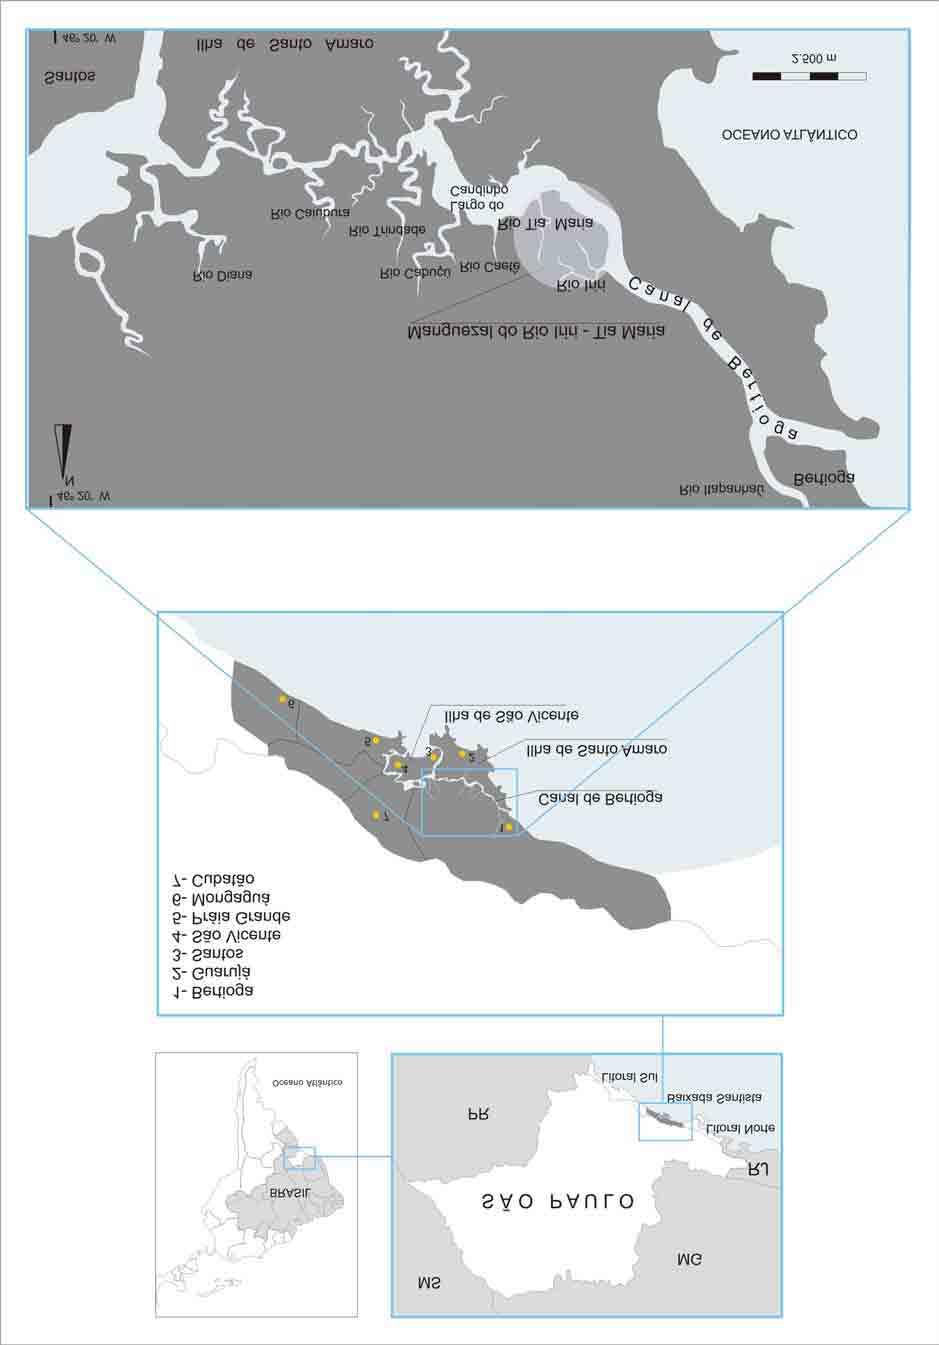 1. APRESENTAÇÃO Figura 7 - Localização do manguezal do Rio Iriri - Tia Maria, no